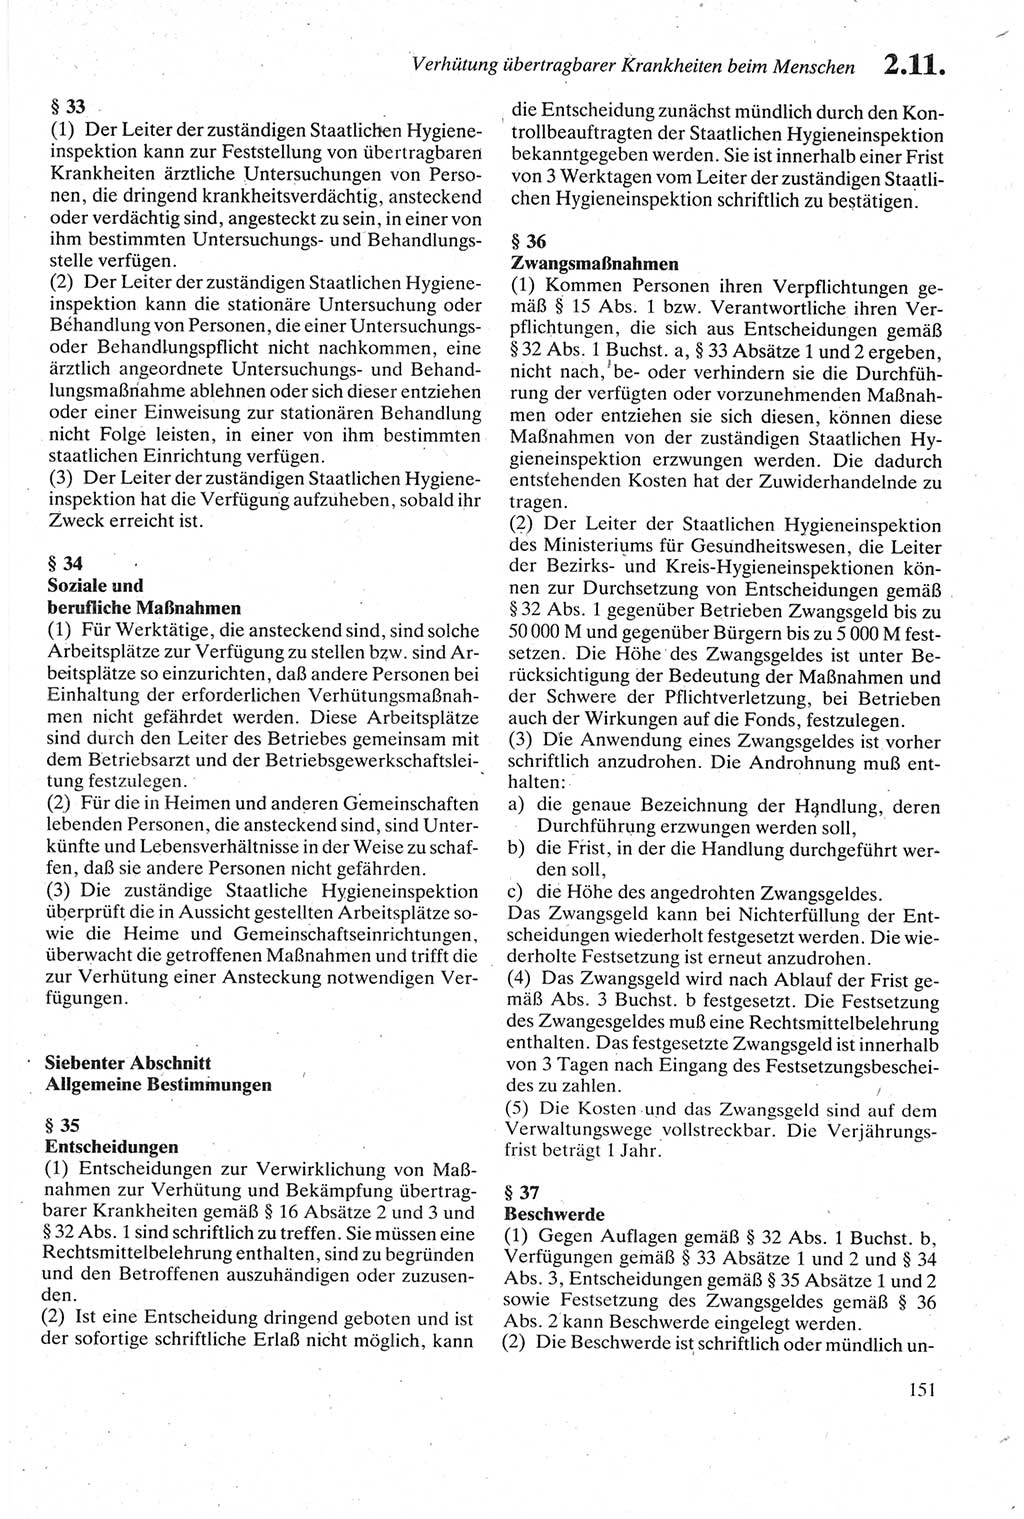 Strafgesetzbuch (StGB) der Deutschen Demokratischen Republik (DDR) sowie angrenzende Gesetze und Bestimmungen 1979, Seite 151 (StGB DDR Ges. Best. 1979, S. 151)